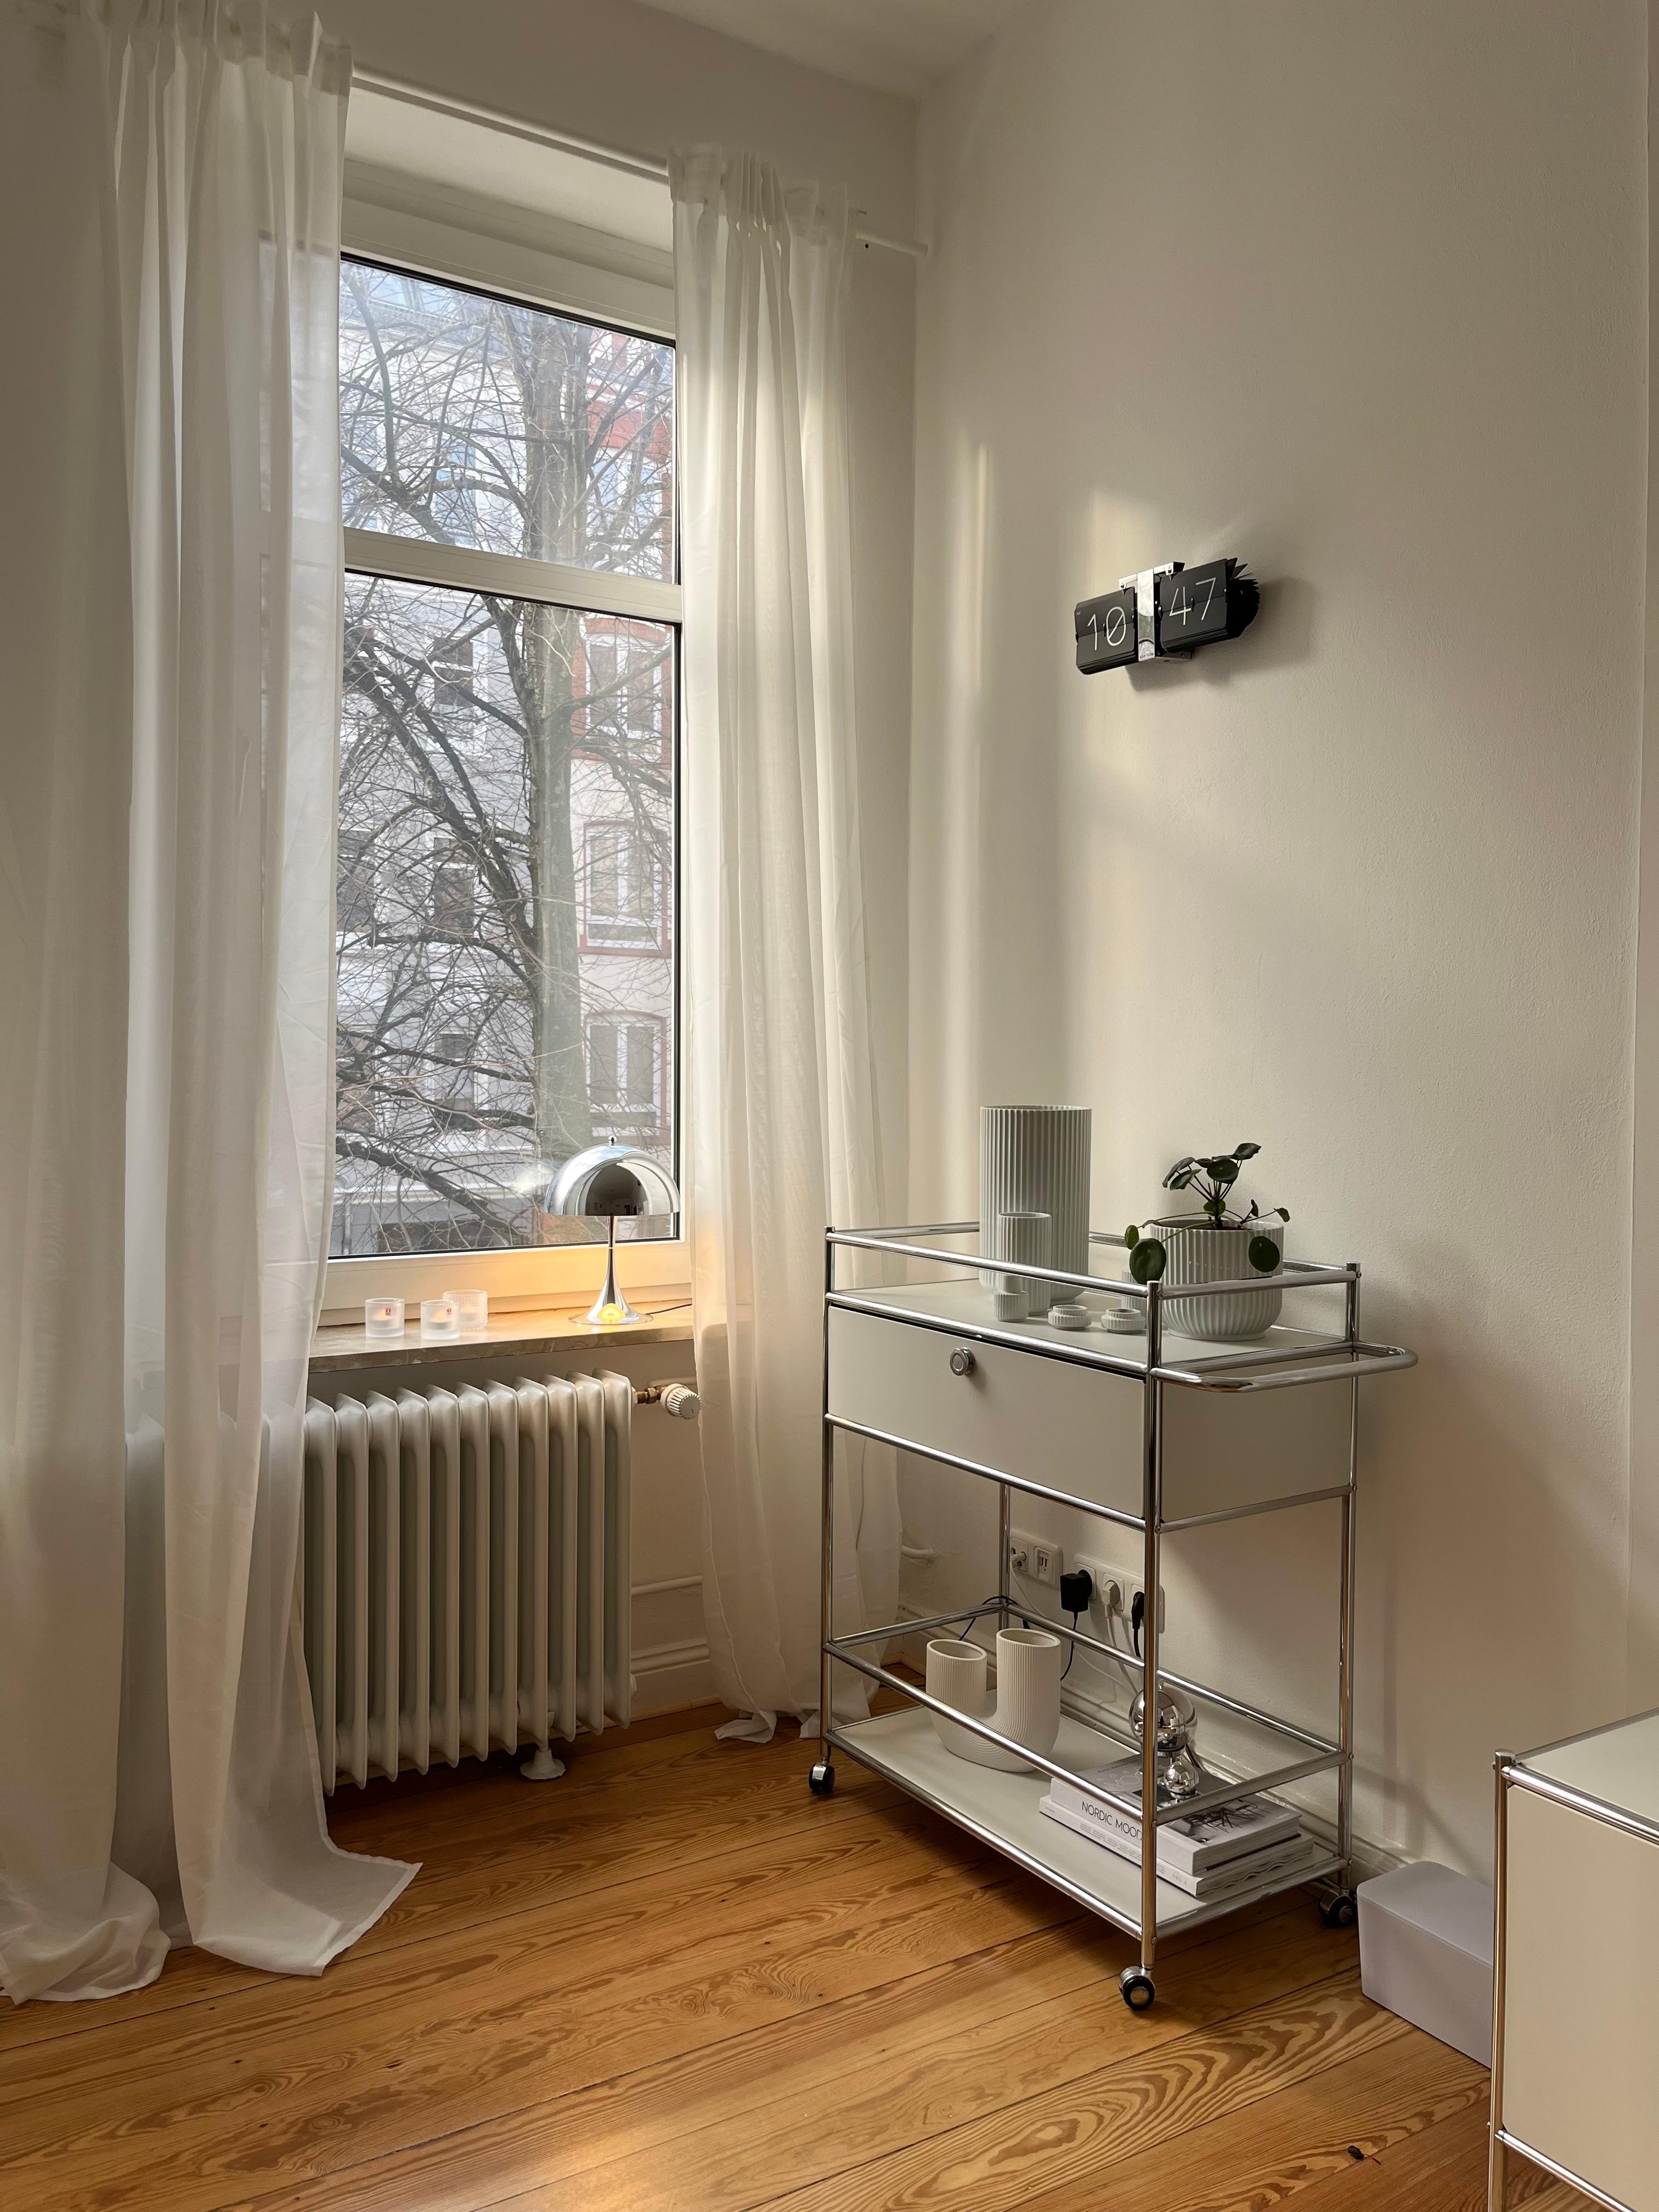 #wohnzimmerideen #livingroom #altbauwohnung #hygge #skandinavischwohnen